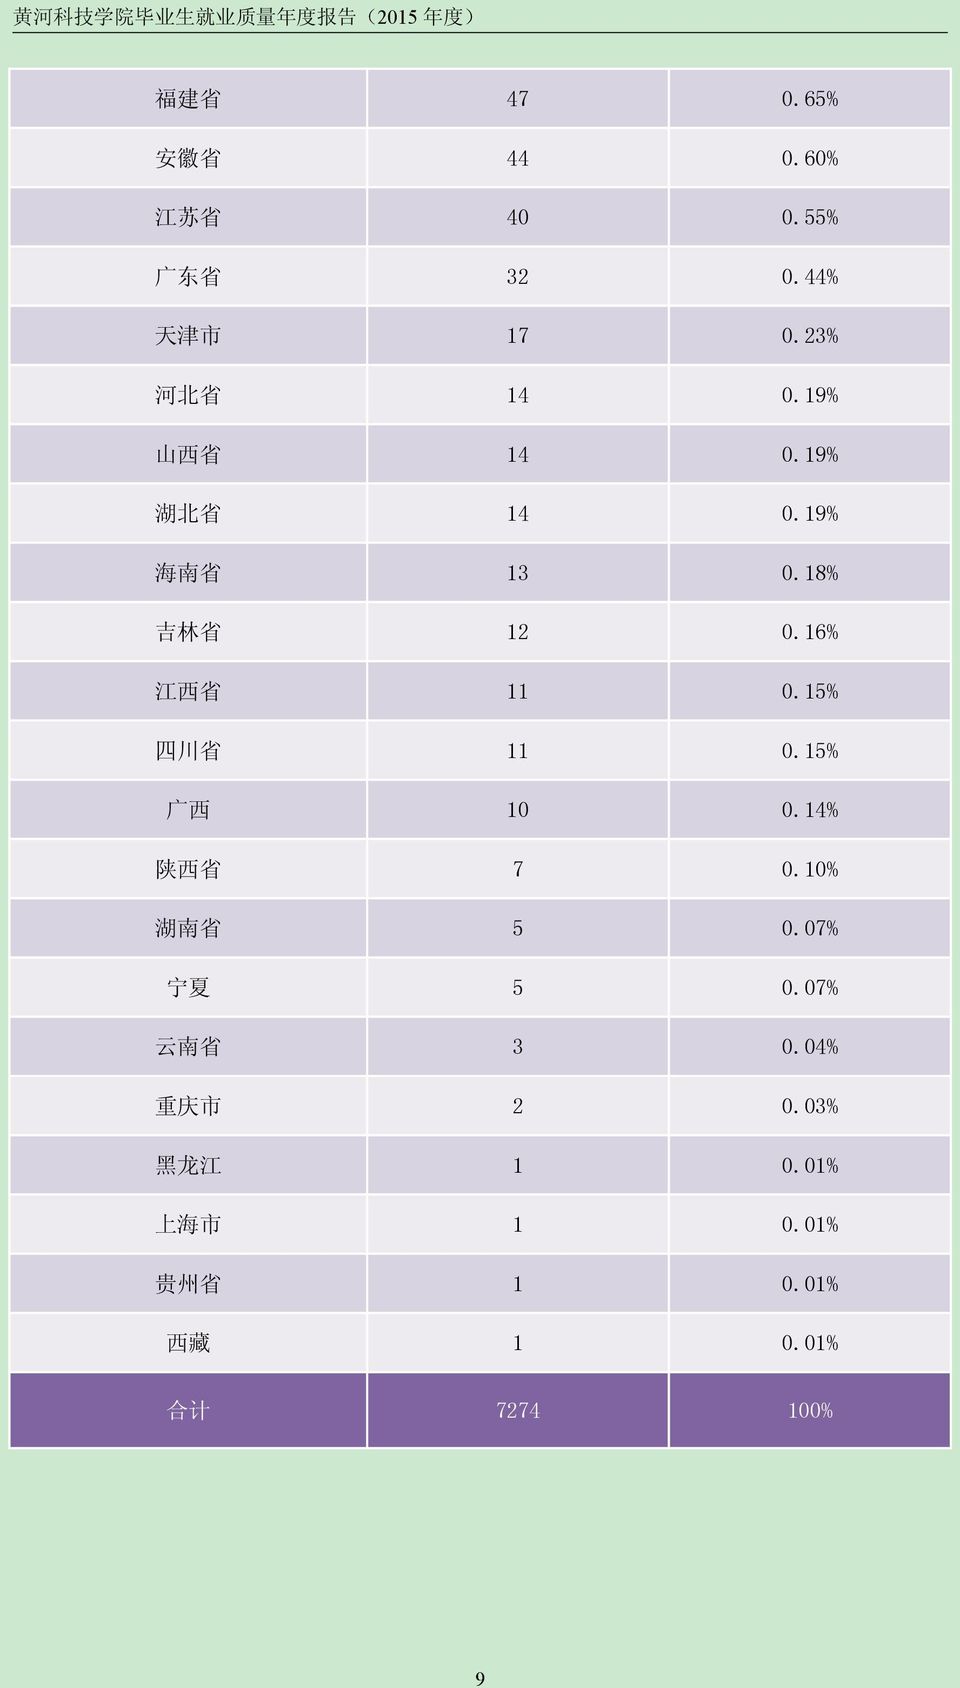 18% 吉 林 省 12 0.16% 江 西 省 11 0.15% 四 川 省 11 0.15% 广 西 10 0.14% 陕 西 省 7 0.10% 湖 南 省 5 0.